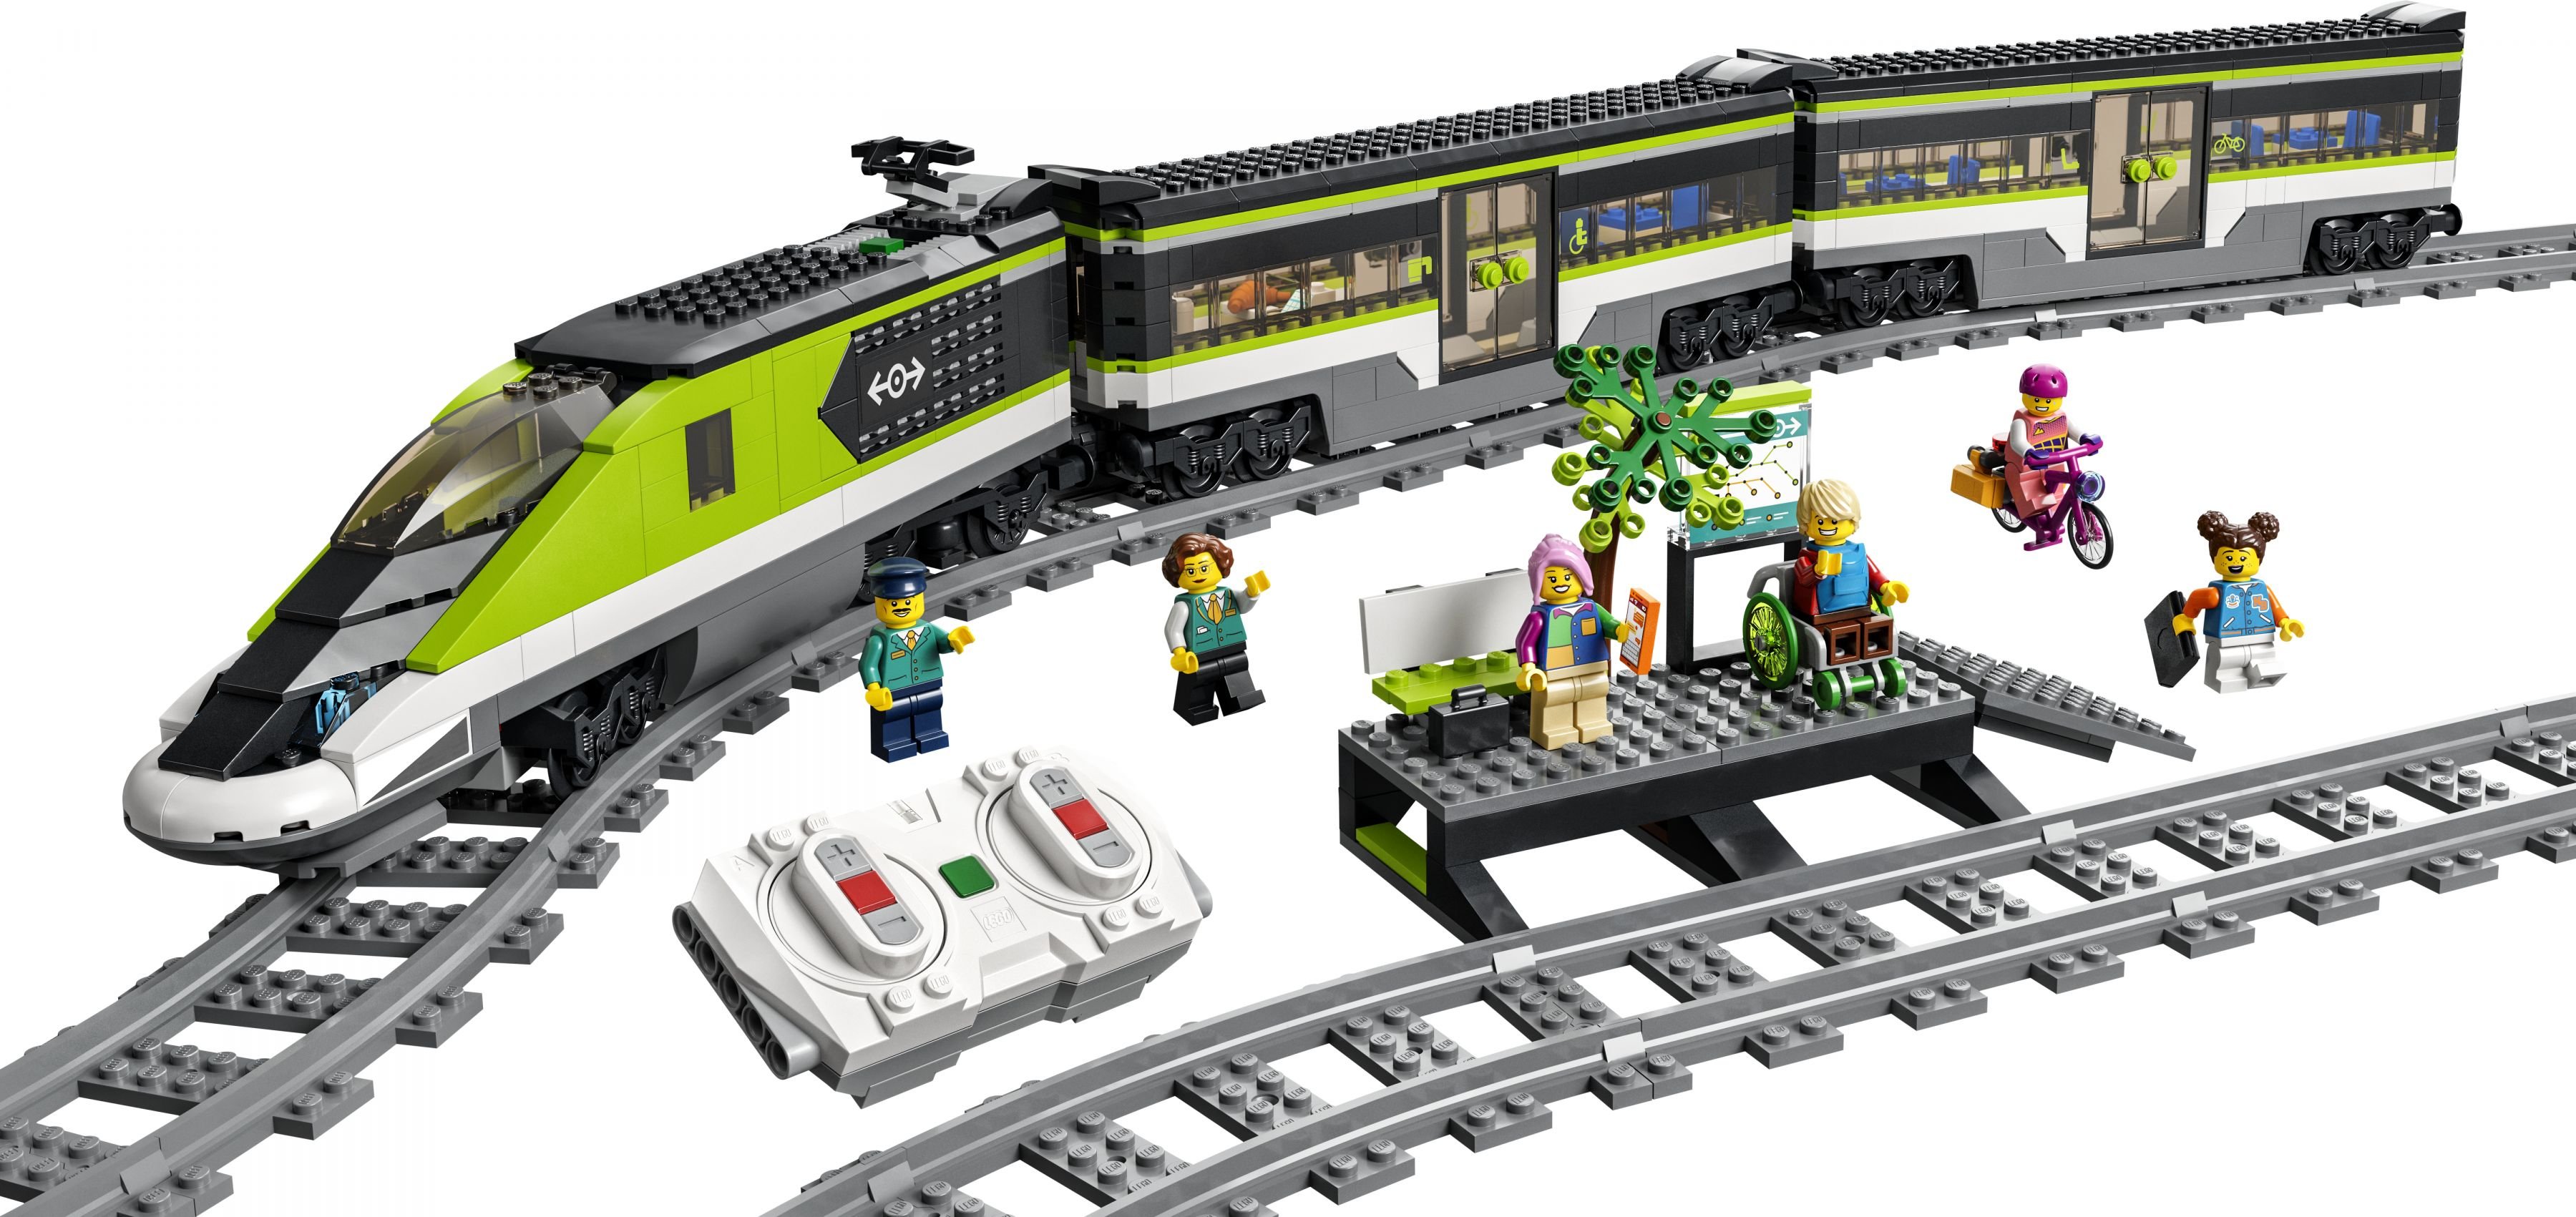 LEGO City 60337 Personen-Schnellzug